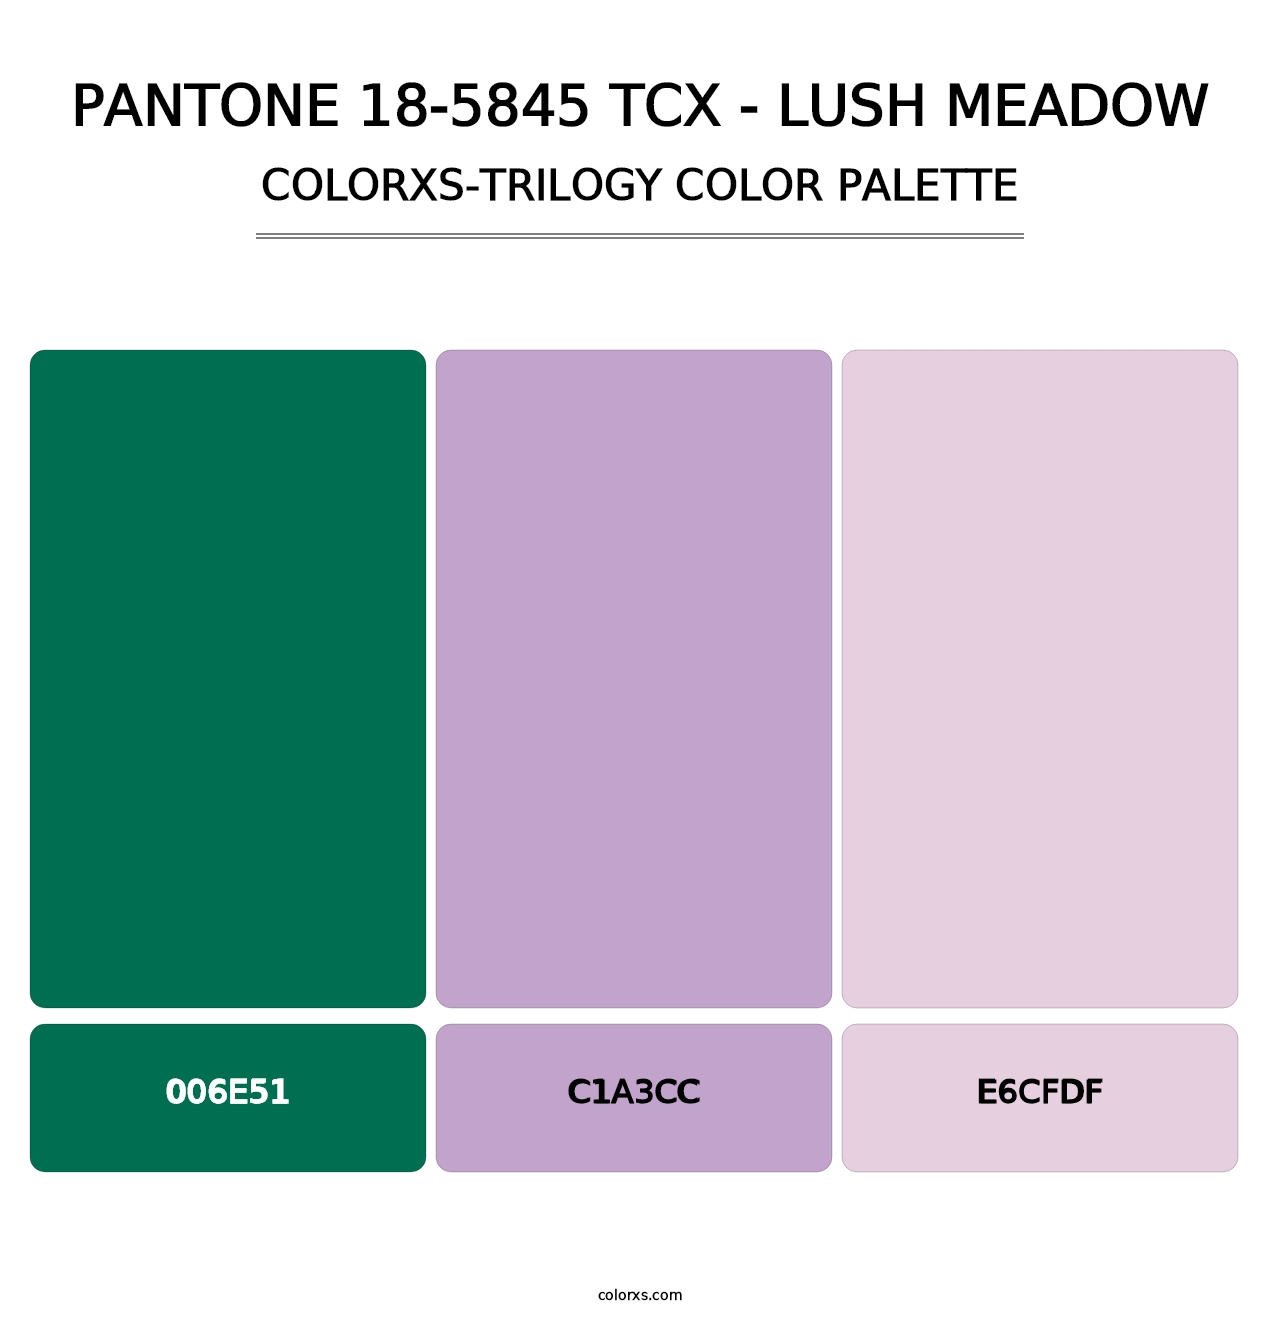 PANTONE 18-5845 TCX - Lush Meadow - Colorxs Trilogy Palette